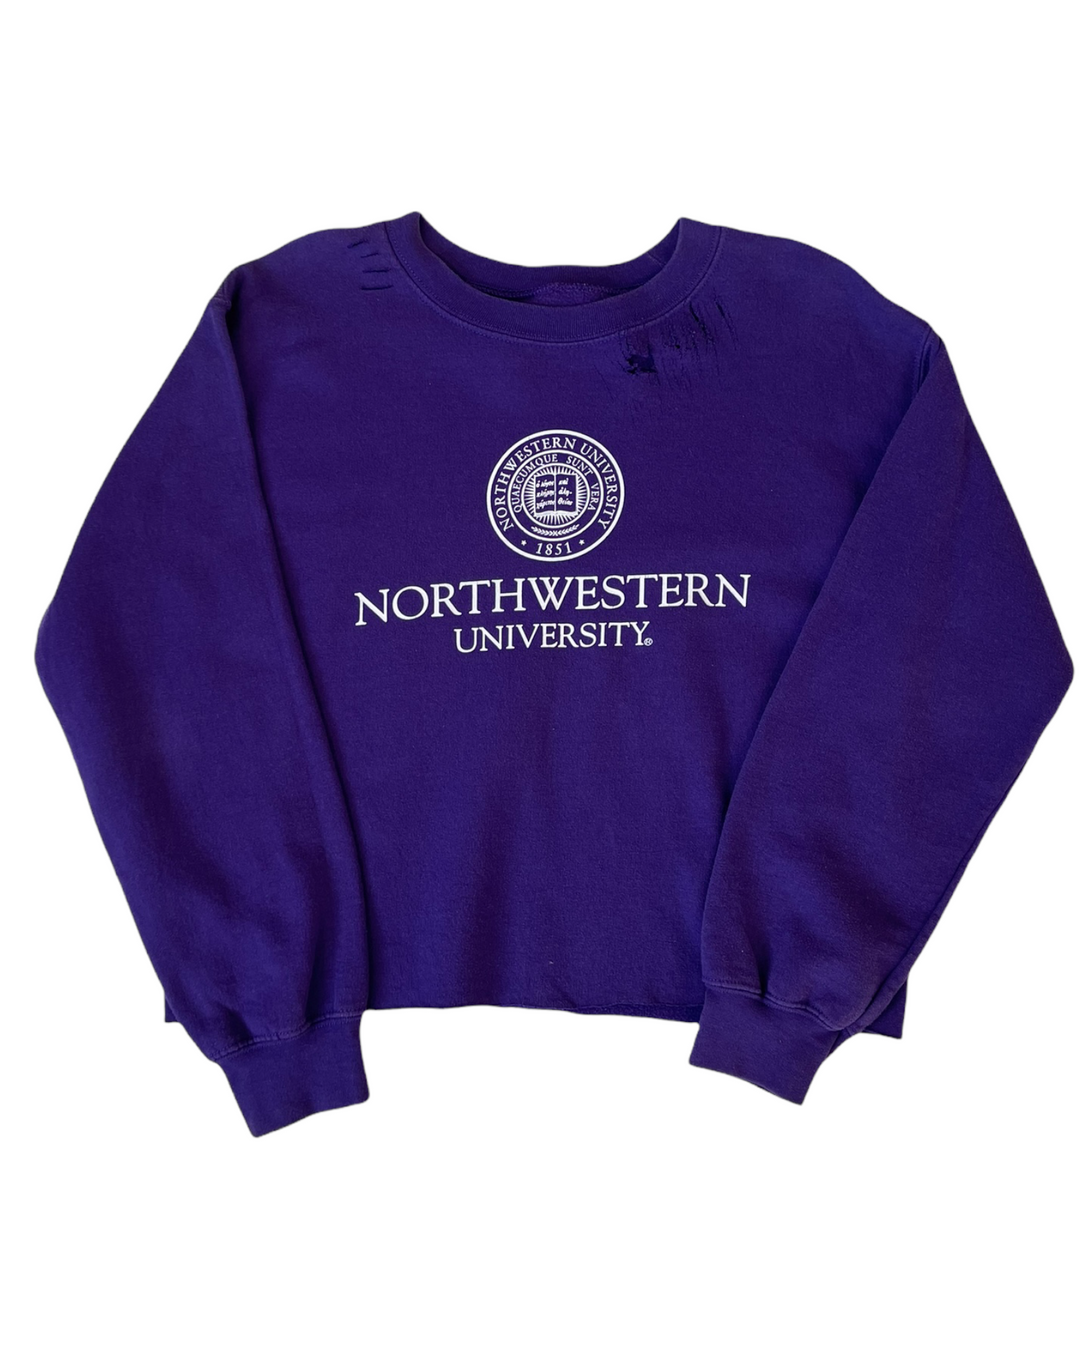 Northwestern Cropped and Distressed Vintage Sweatshirt